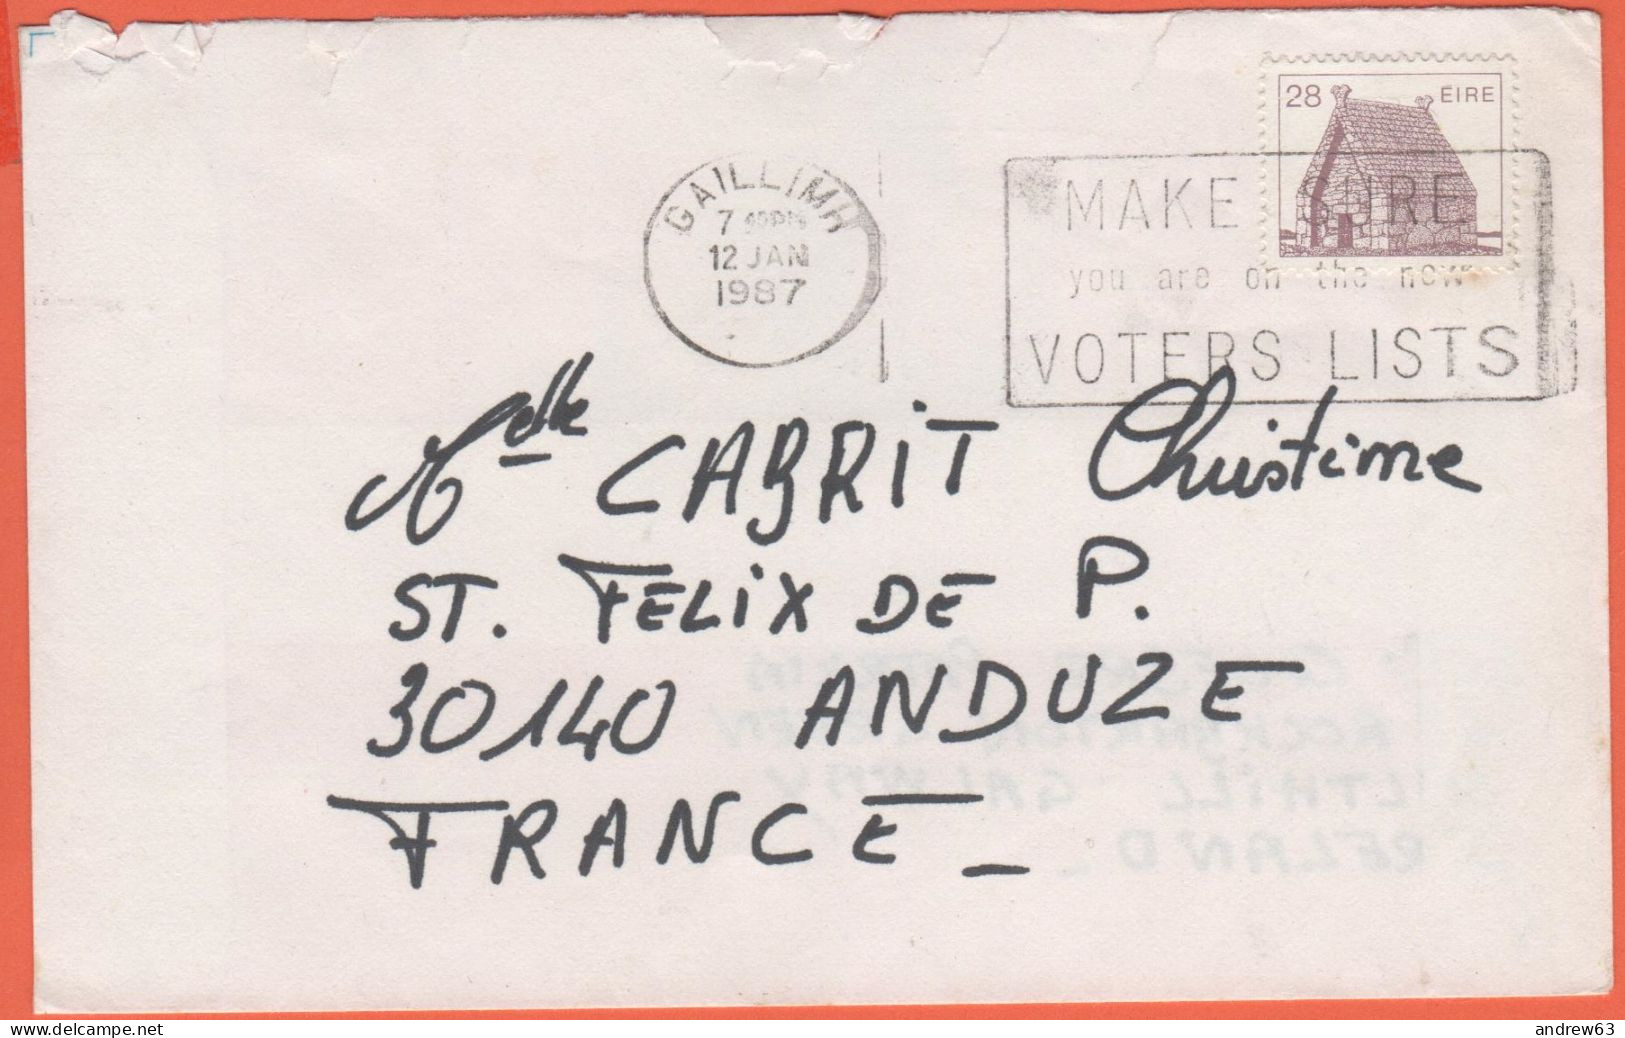 IRLANDA - IRELAND - Irlande - EIRE - 1987 - 28 - Viaggiata Da Gaillimh Per Anduze, France - Cartas & Documentos